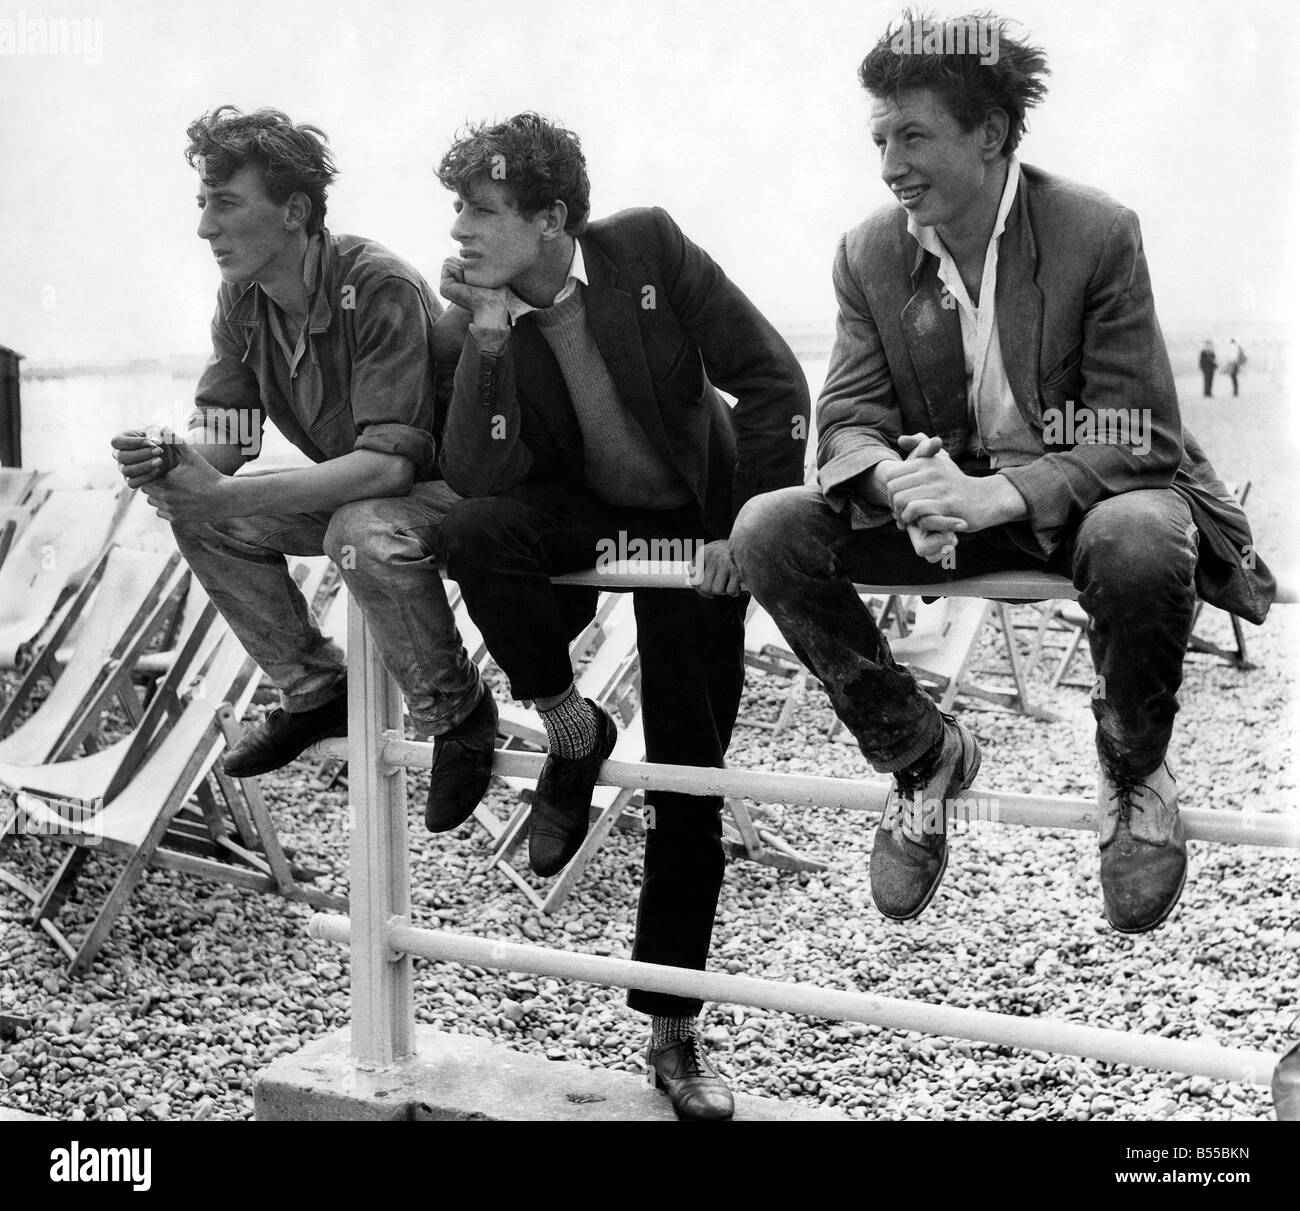 Feiertage: Täglicher Spiegel Strand tragen zeigen. Einige Jungs beobachten  während ihrer Pausenzeit. Juli 1960 P013221 Stockfotografie - Alamy